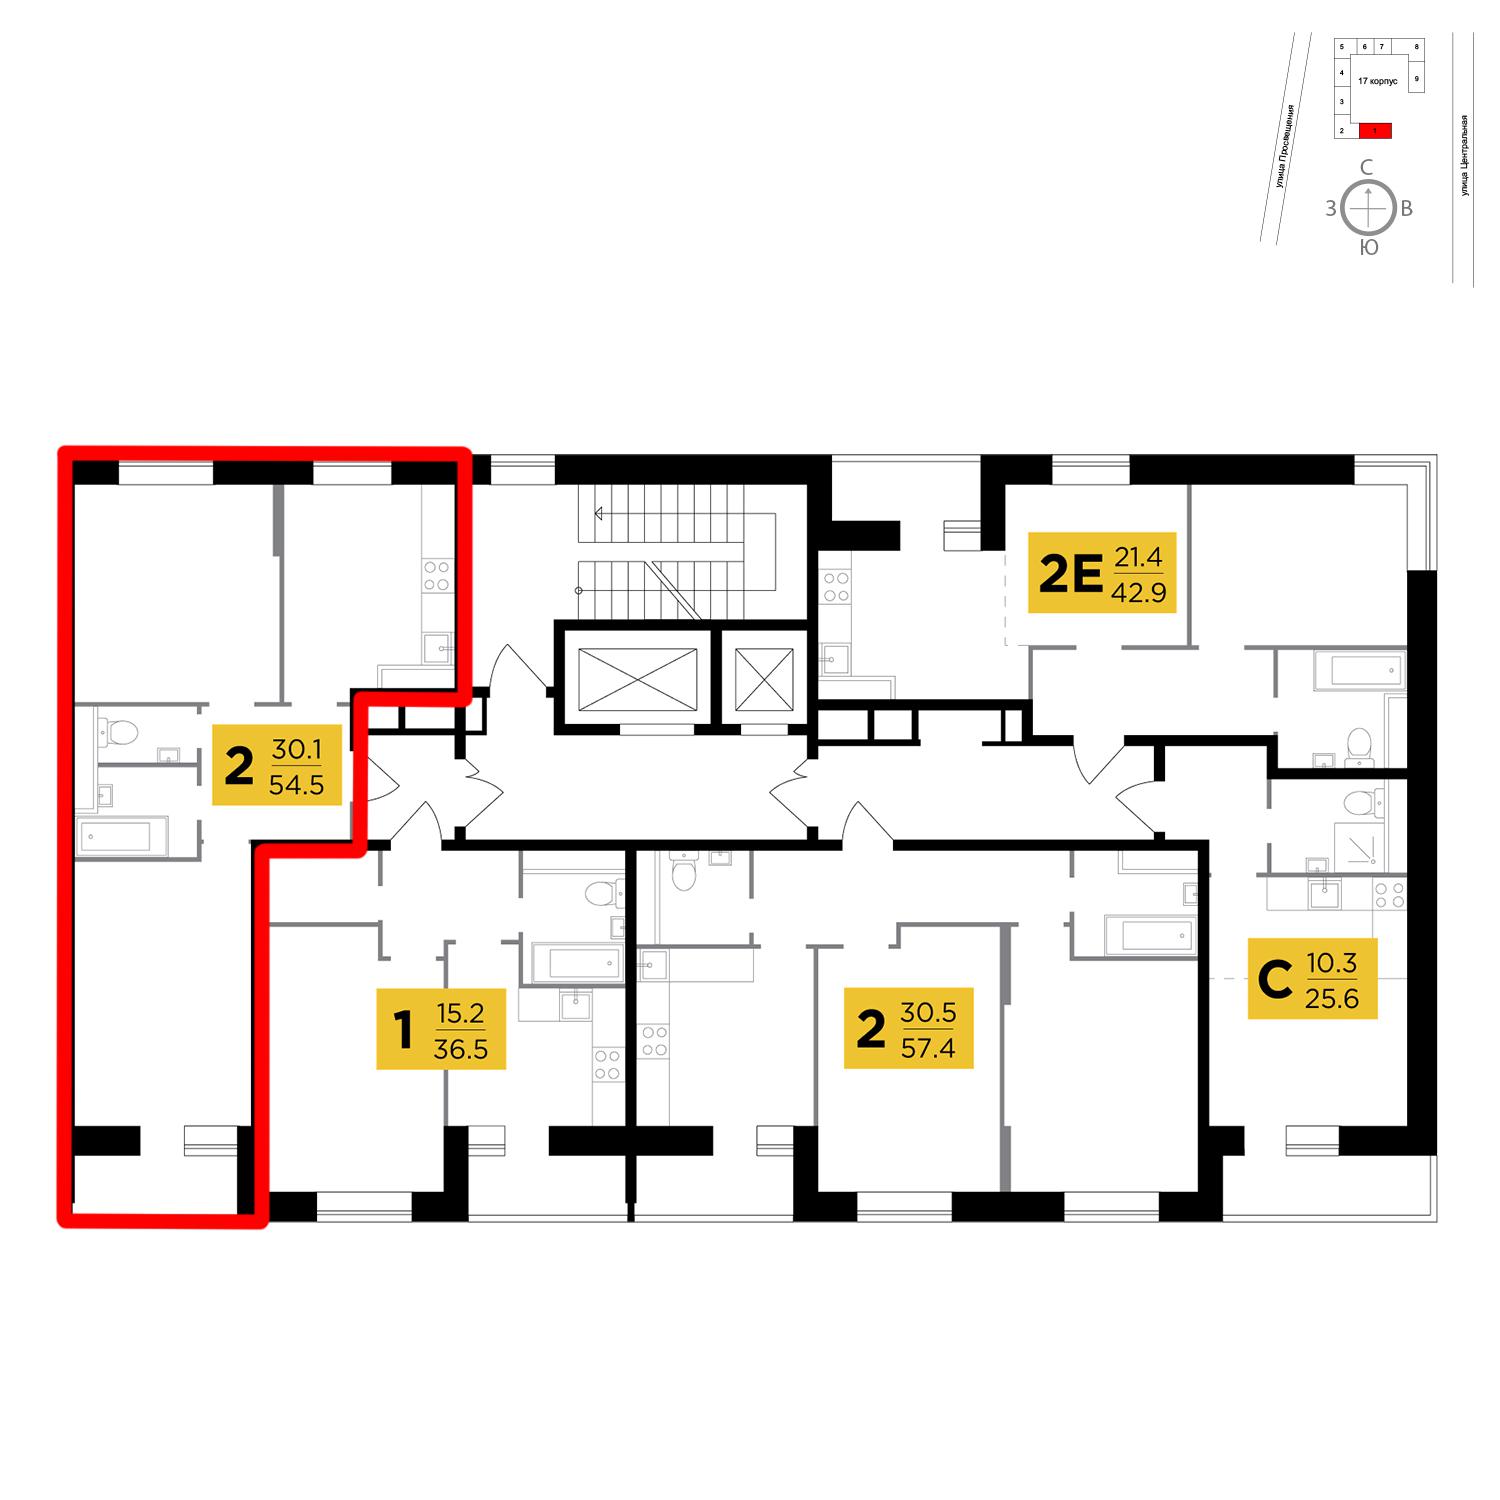 Продаётся 2-комнатная квартира в новостройке 54.5 кв.м. этаж 2/16 за 4 398 967 руб 